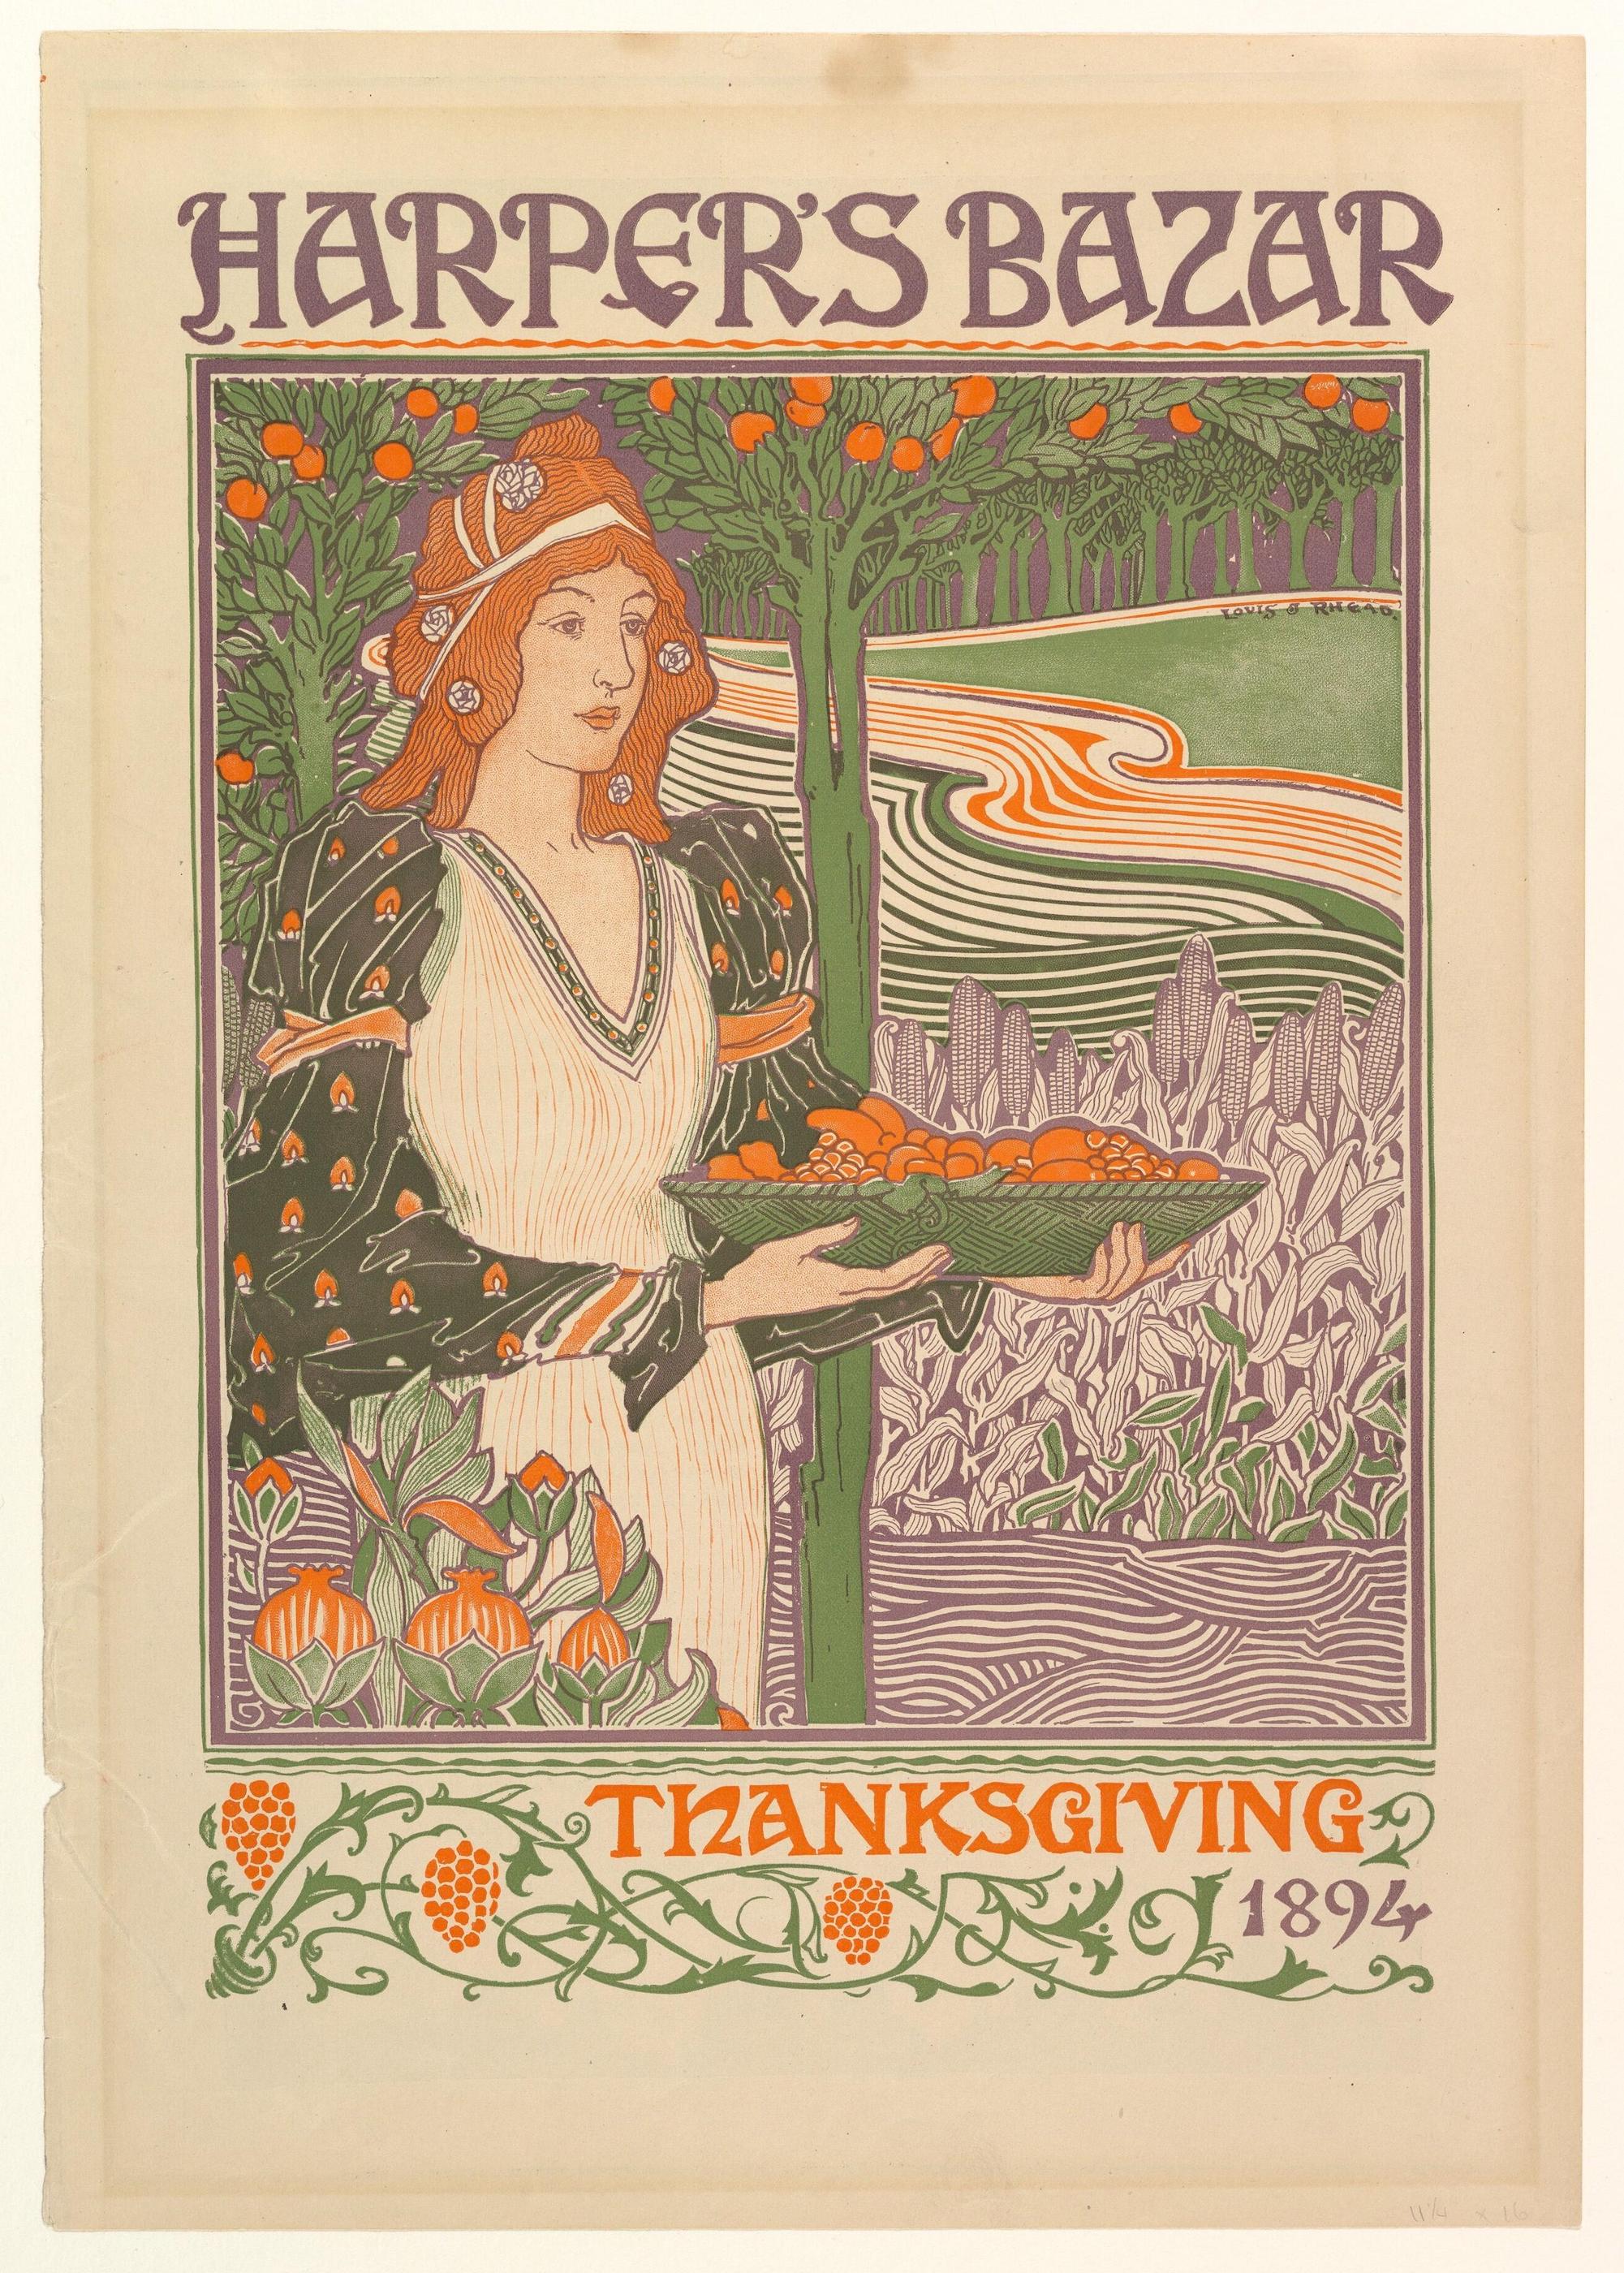 Díkůvzdání by Louis J. Rhead - 1894 - 48,9 x 36,2 cm 